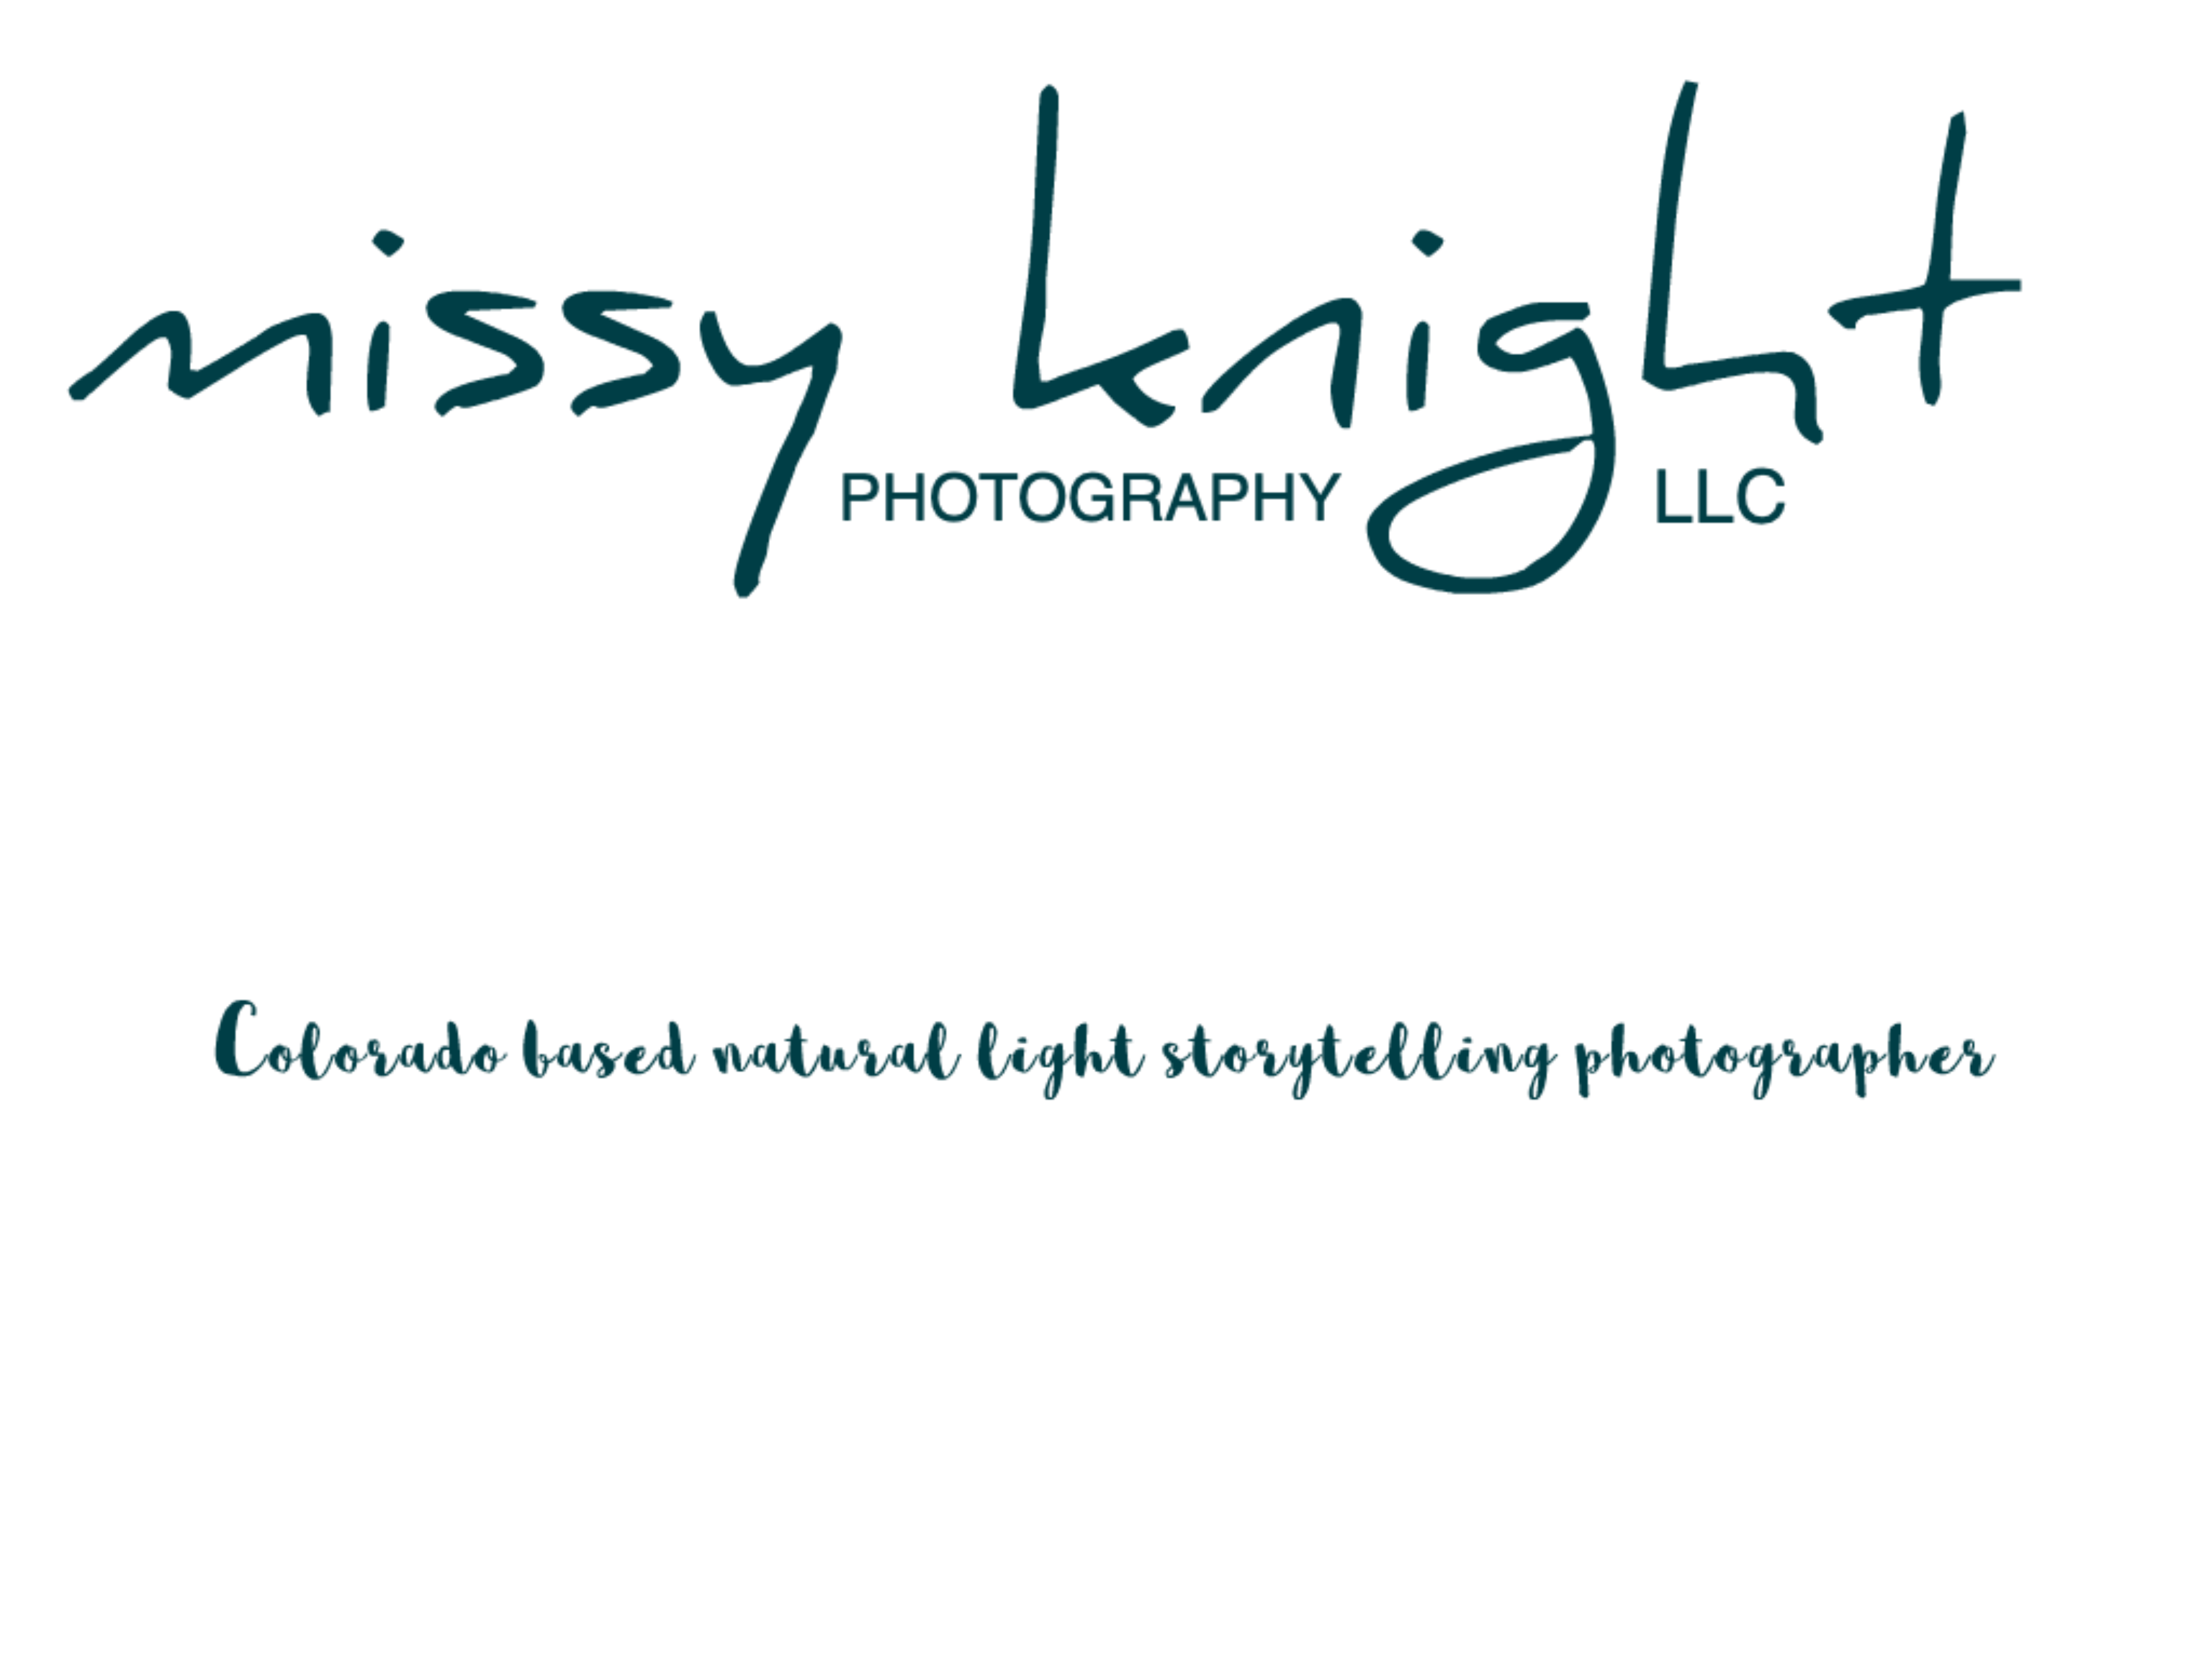 Missy Knight